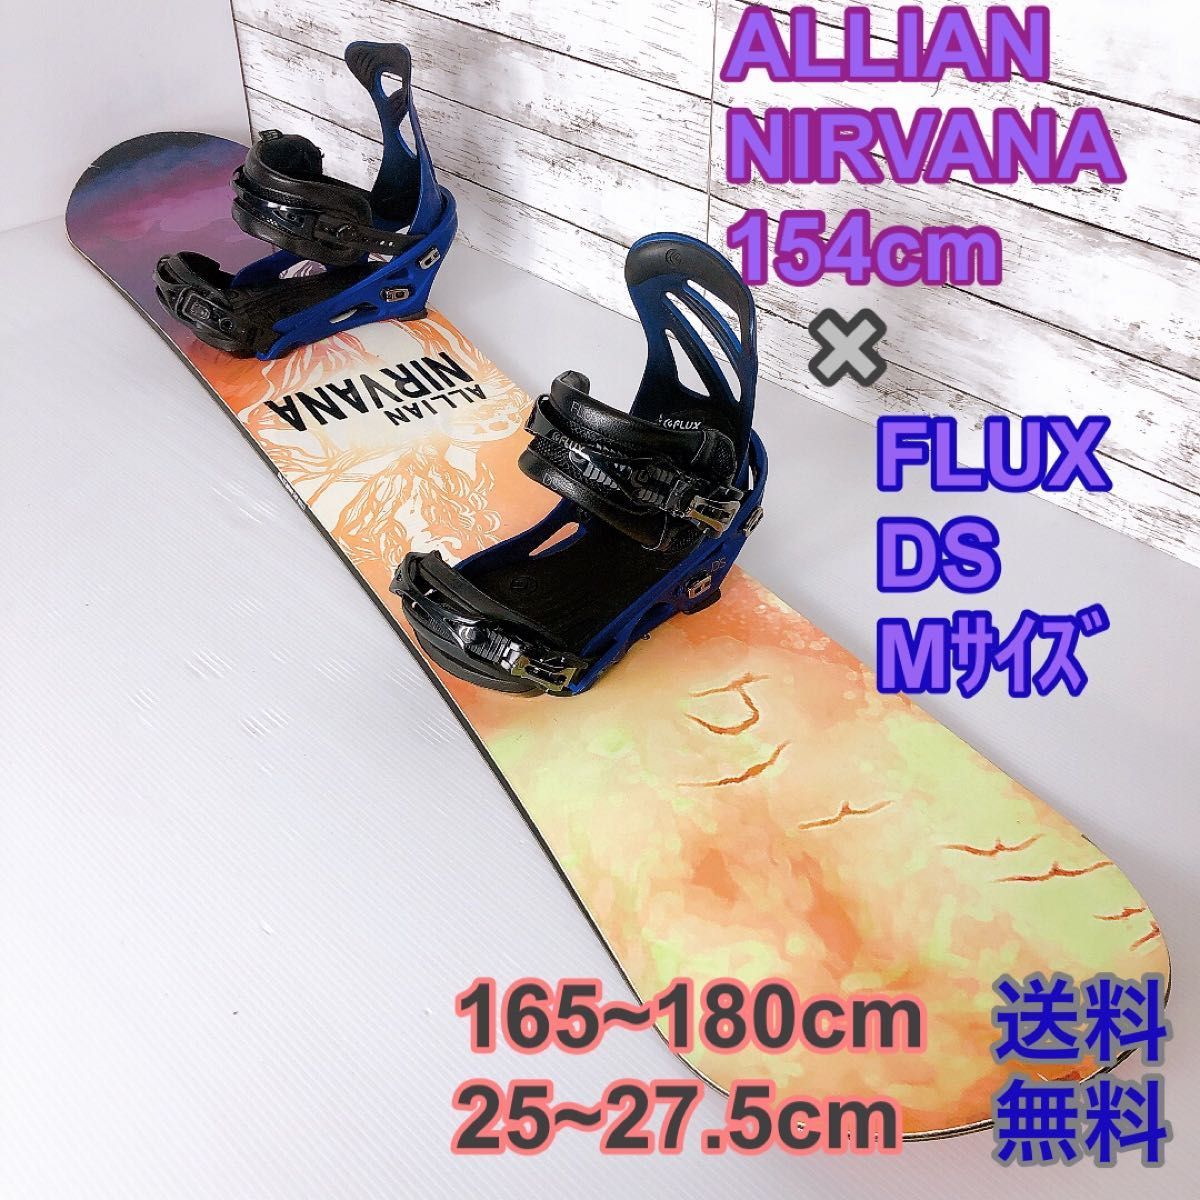 ALLIAN FLUX 154cm 送料無料 カバー付き-